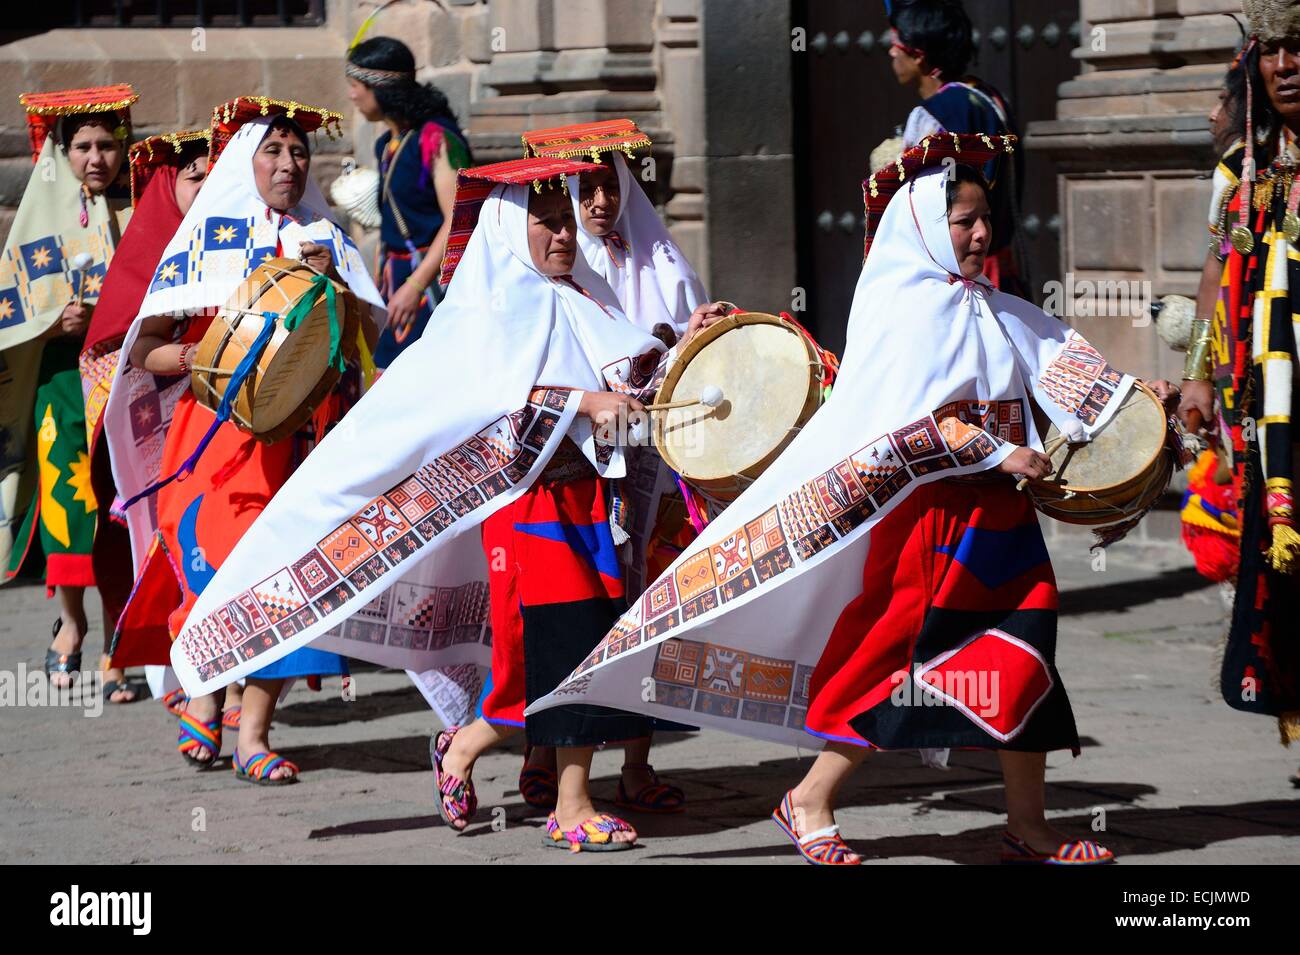 Le Pérou, Cuzco Cuzco, province, classé au Patrimoine Mondial de l'UNESCO, l'Inti Raymi, fête du Soleil, une importante célébration Inca qui a lieu tous les 24 juin dans le centre historique et Saqsayhuaman, marquant le solstice d'hiver et le début de la co Banque D'Images